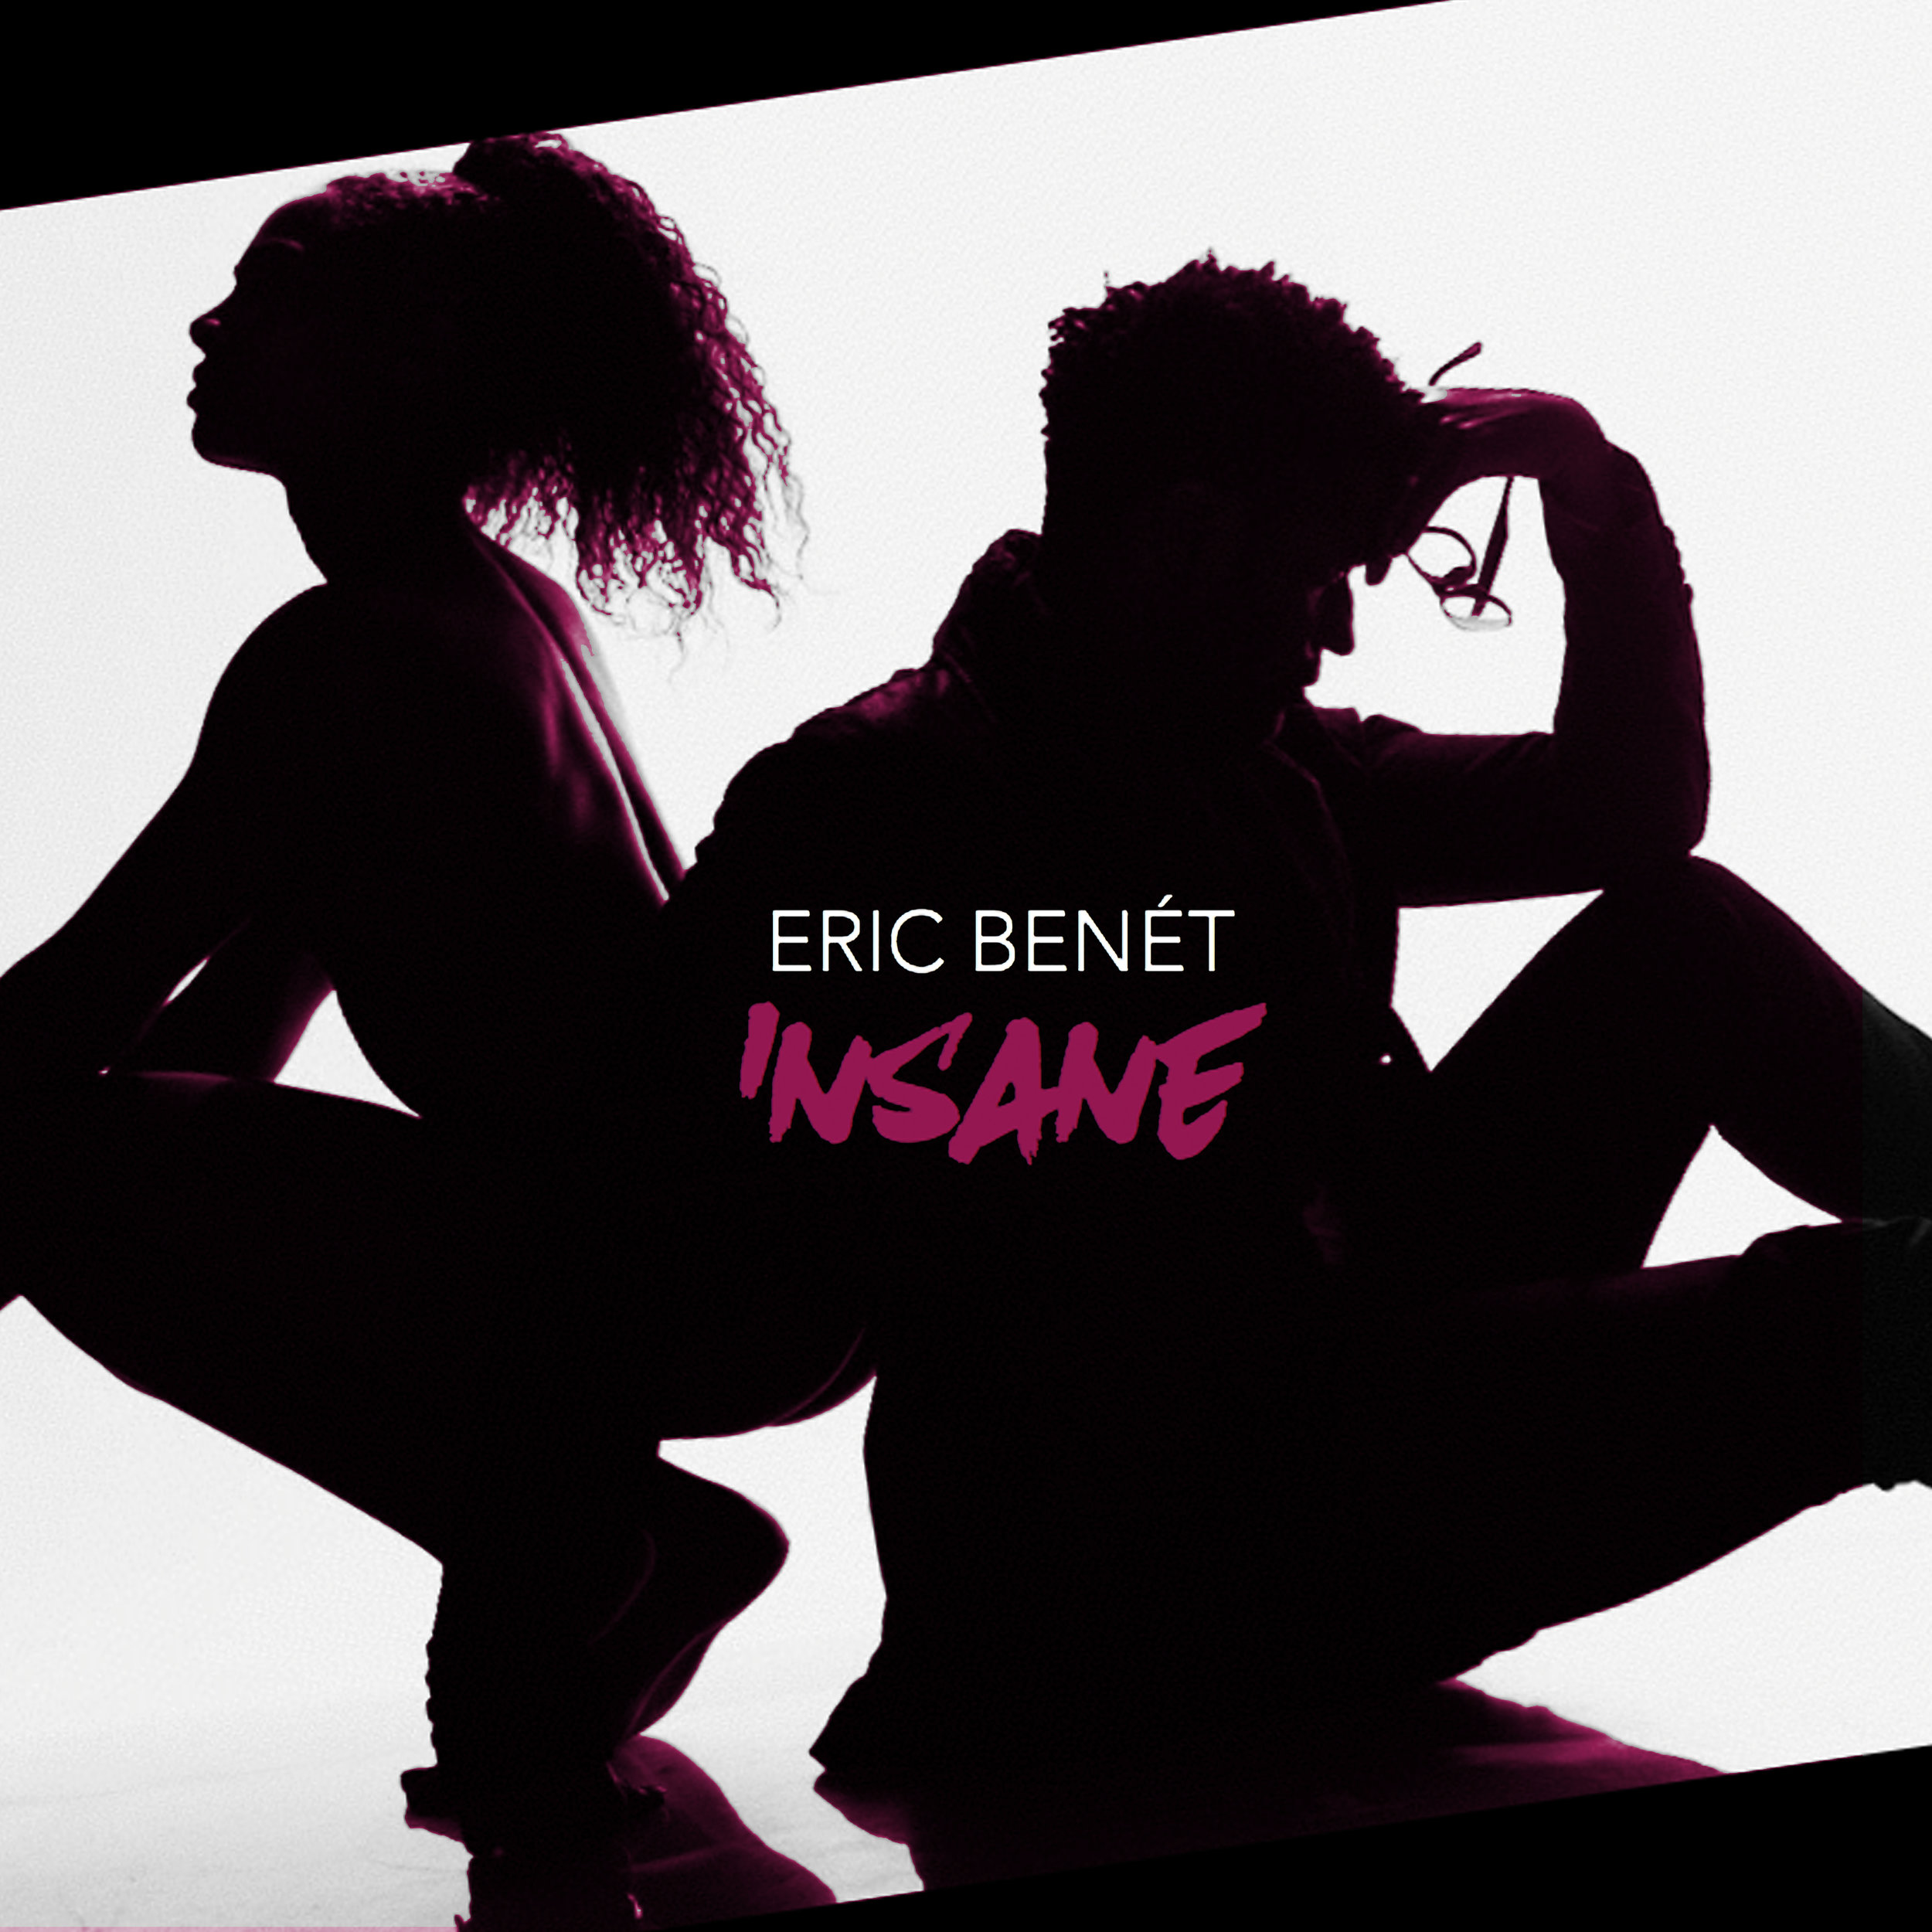 Eric Bennet Insane Art iTunes.jpg